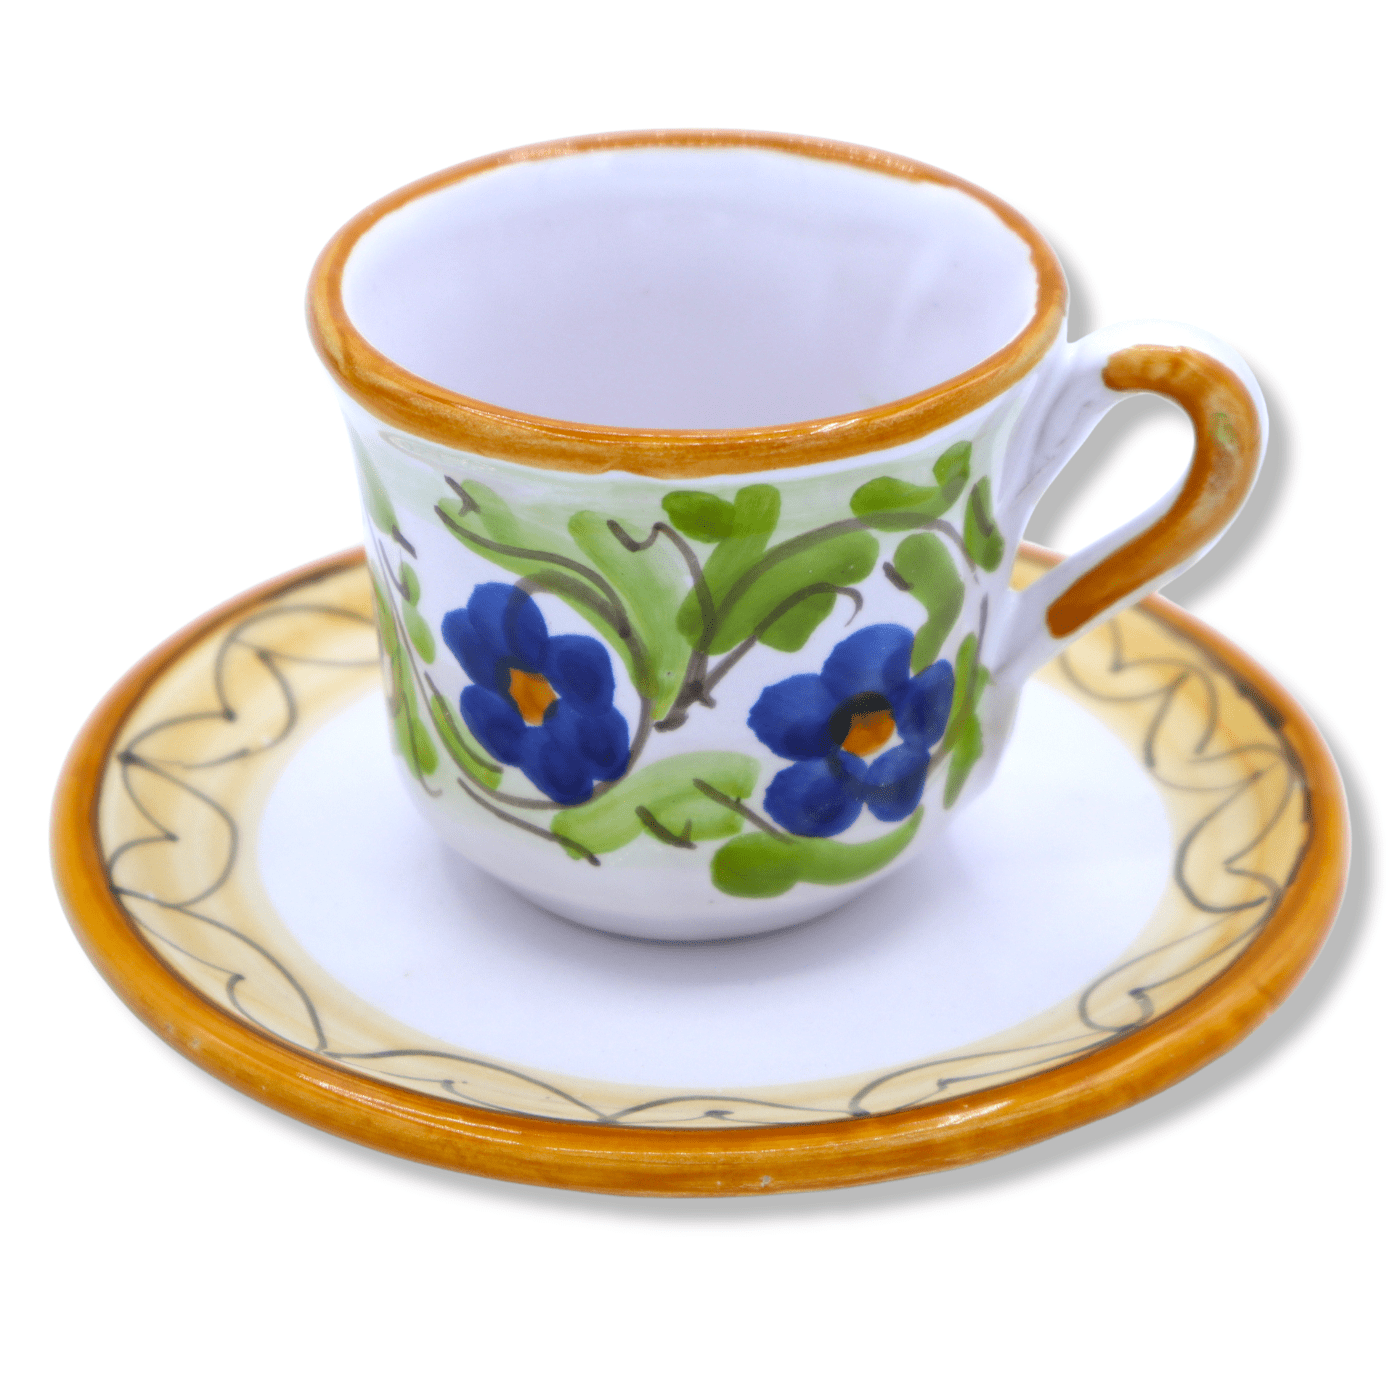 Xícara de café em cerâmica siciliana fina, decoração selecionável - h 5 cm  aprox. (1Pçs) Mod NL OPÇÃO DE DECORAÇÃO SELECIONADA Decoro 1